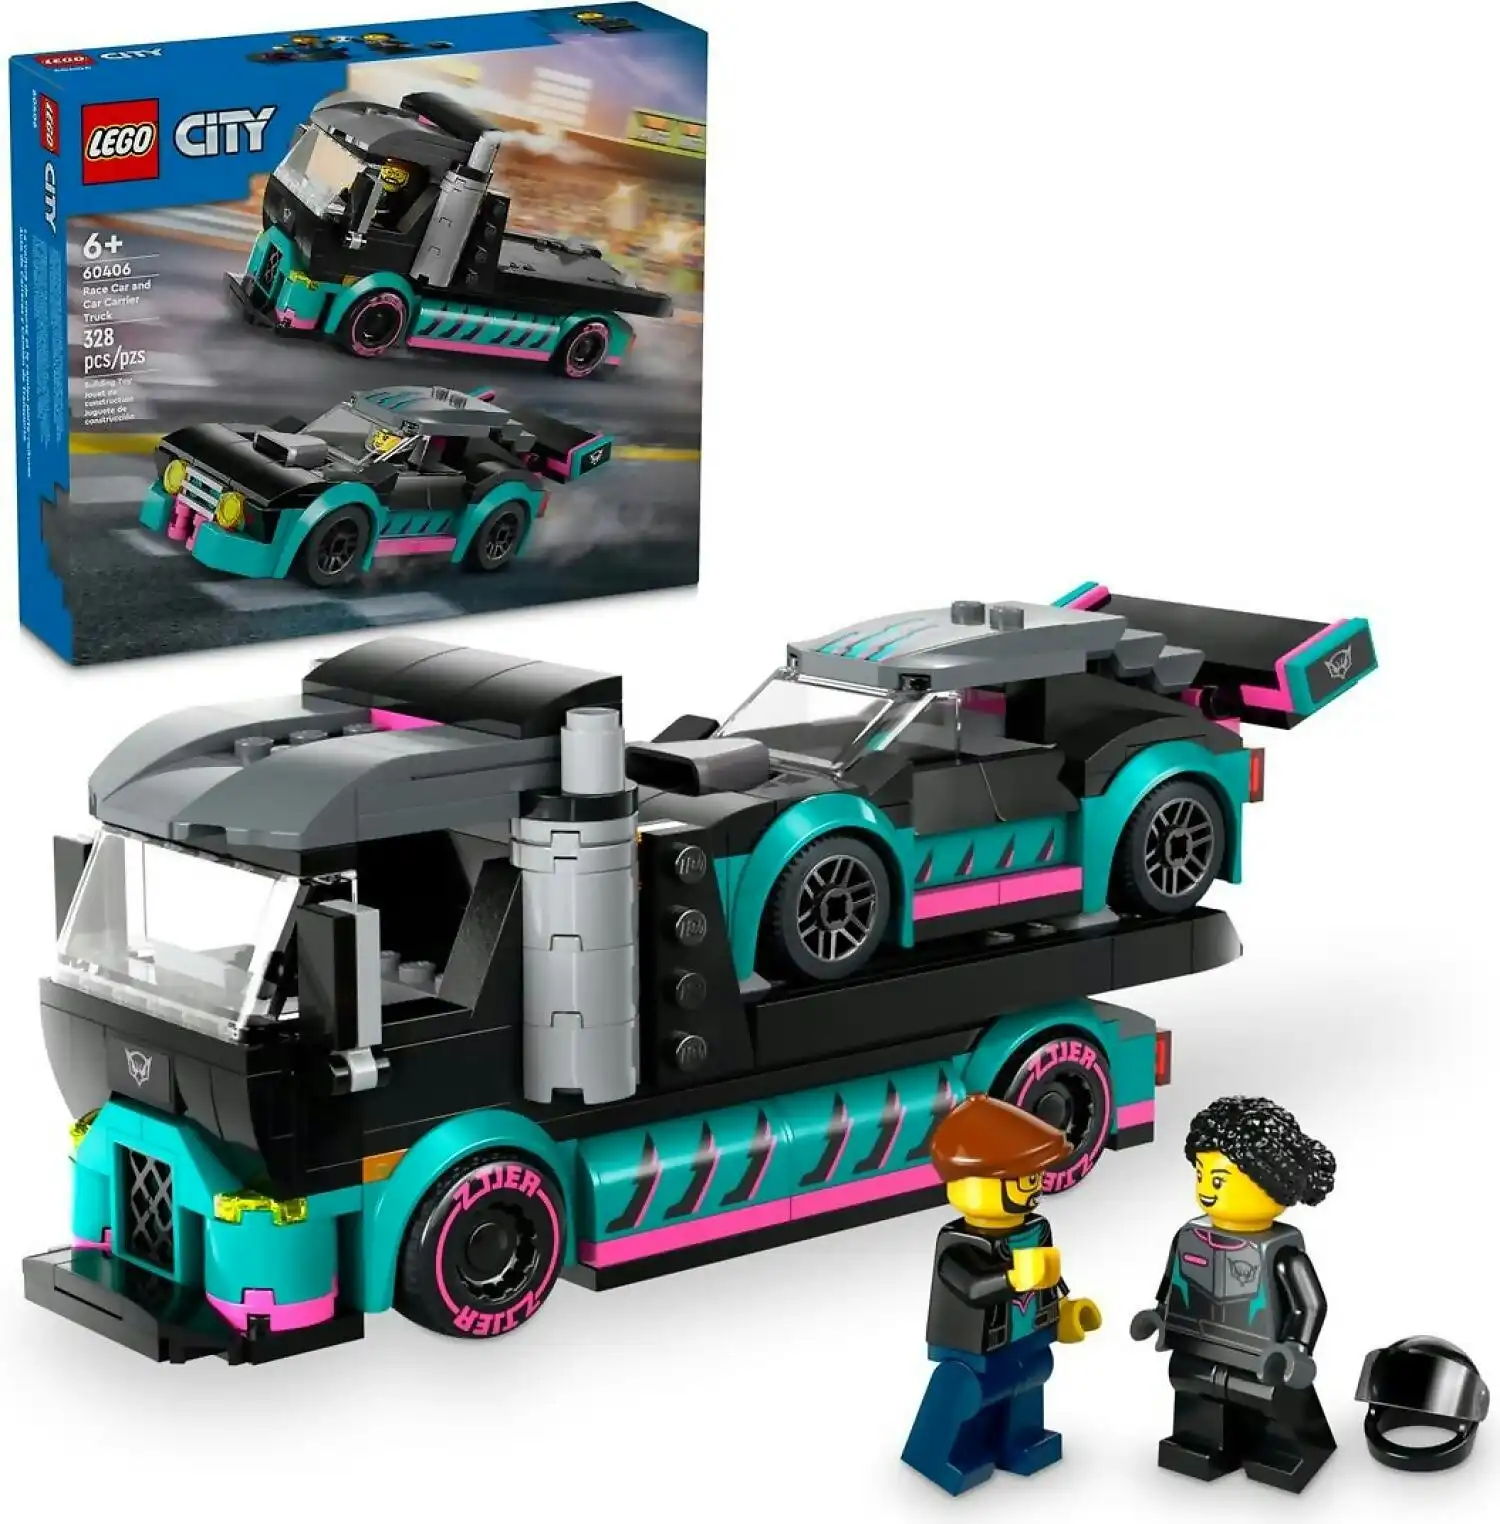 LEGO 60406 Race Car and Car Carrier Truck - City